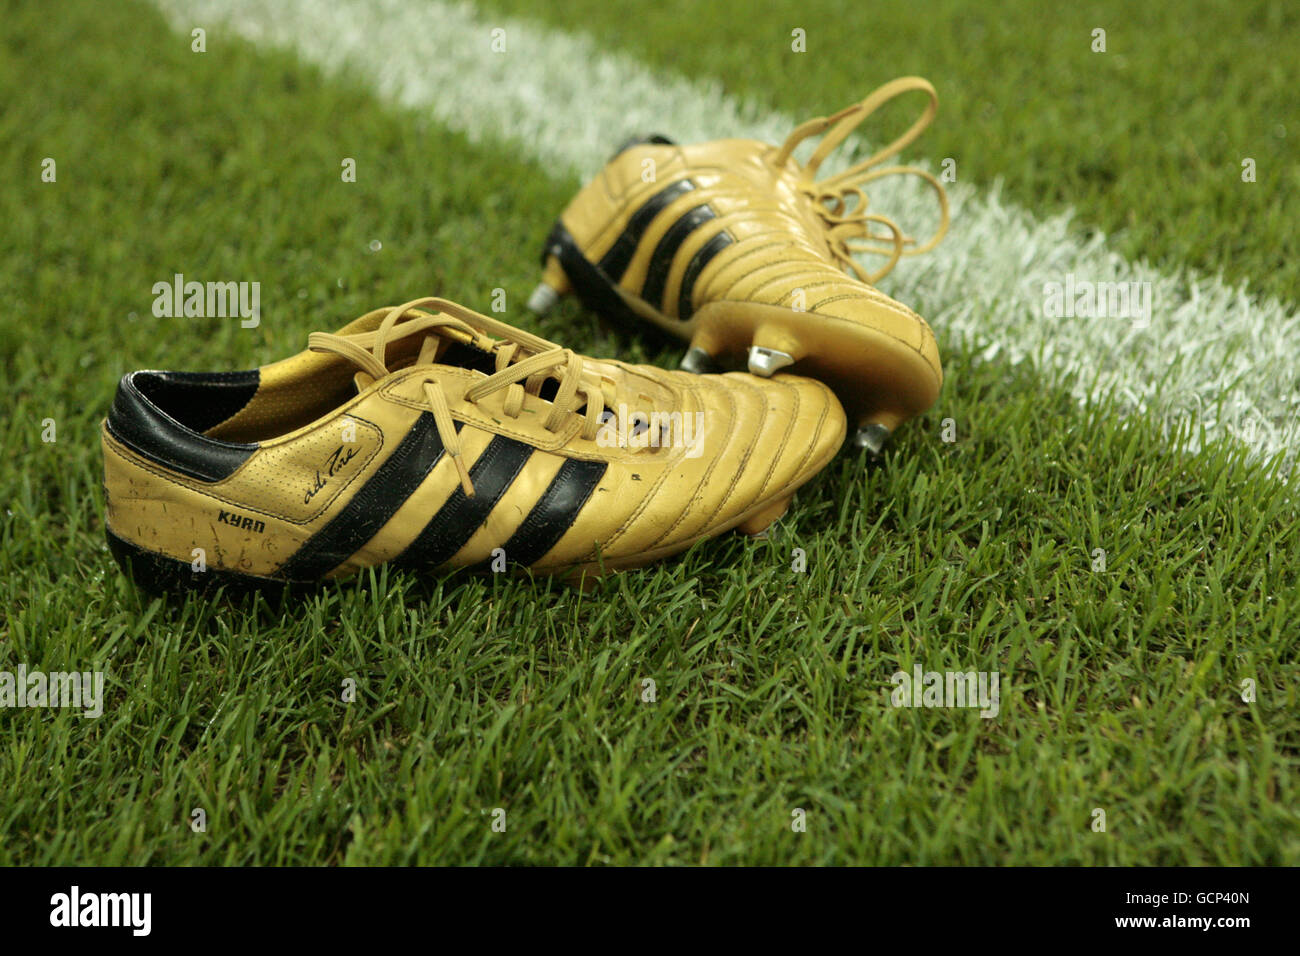 Detalle de botas de fútbol adidas doradas en el campo fotografías e imágenes alta resolución - Alamy